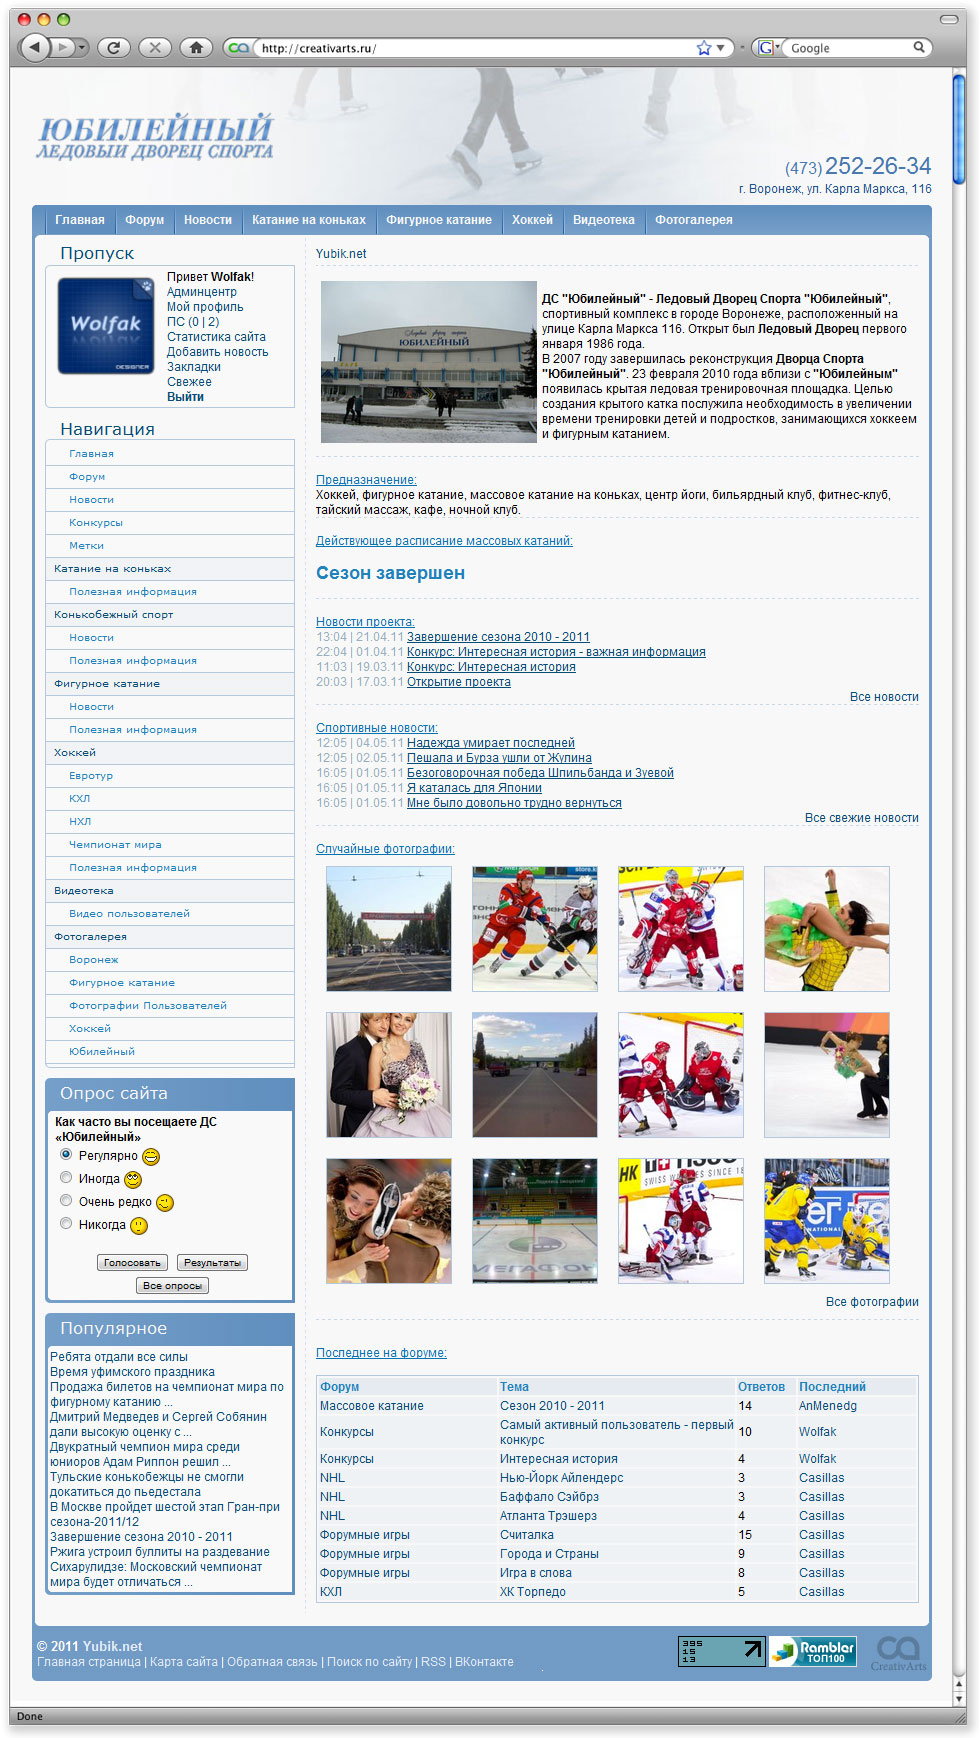 Новый дизайн для сайта дворца спорта юбилейный - Yubik v2